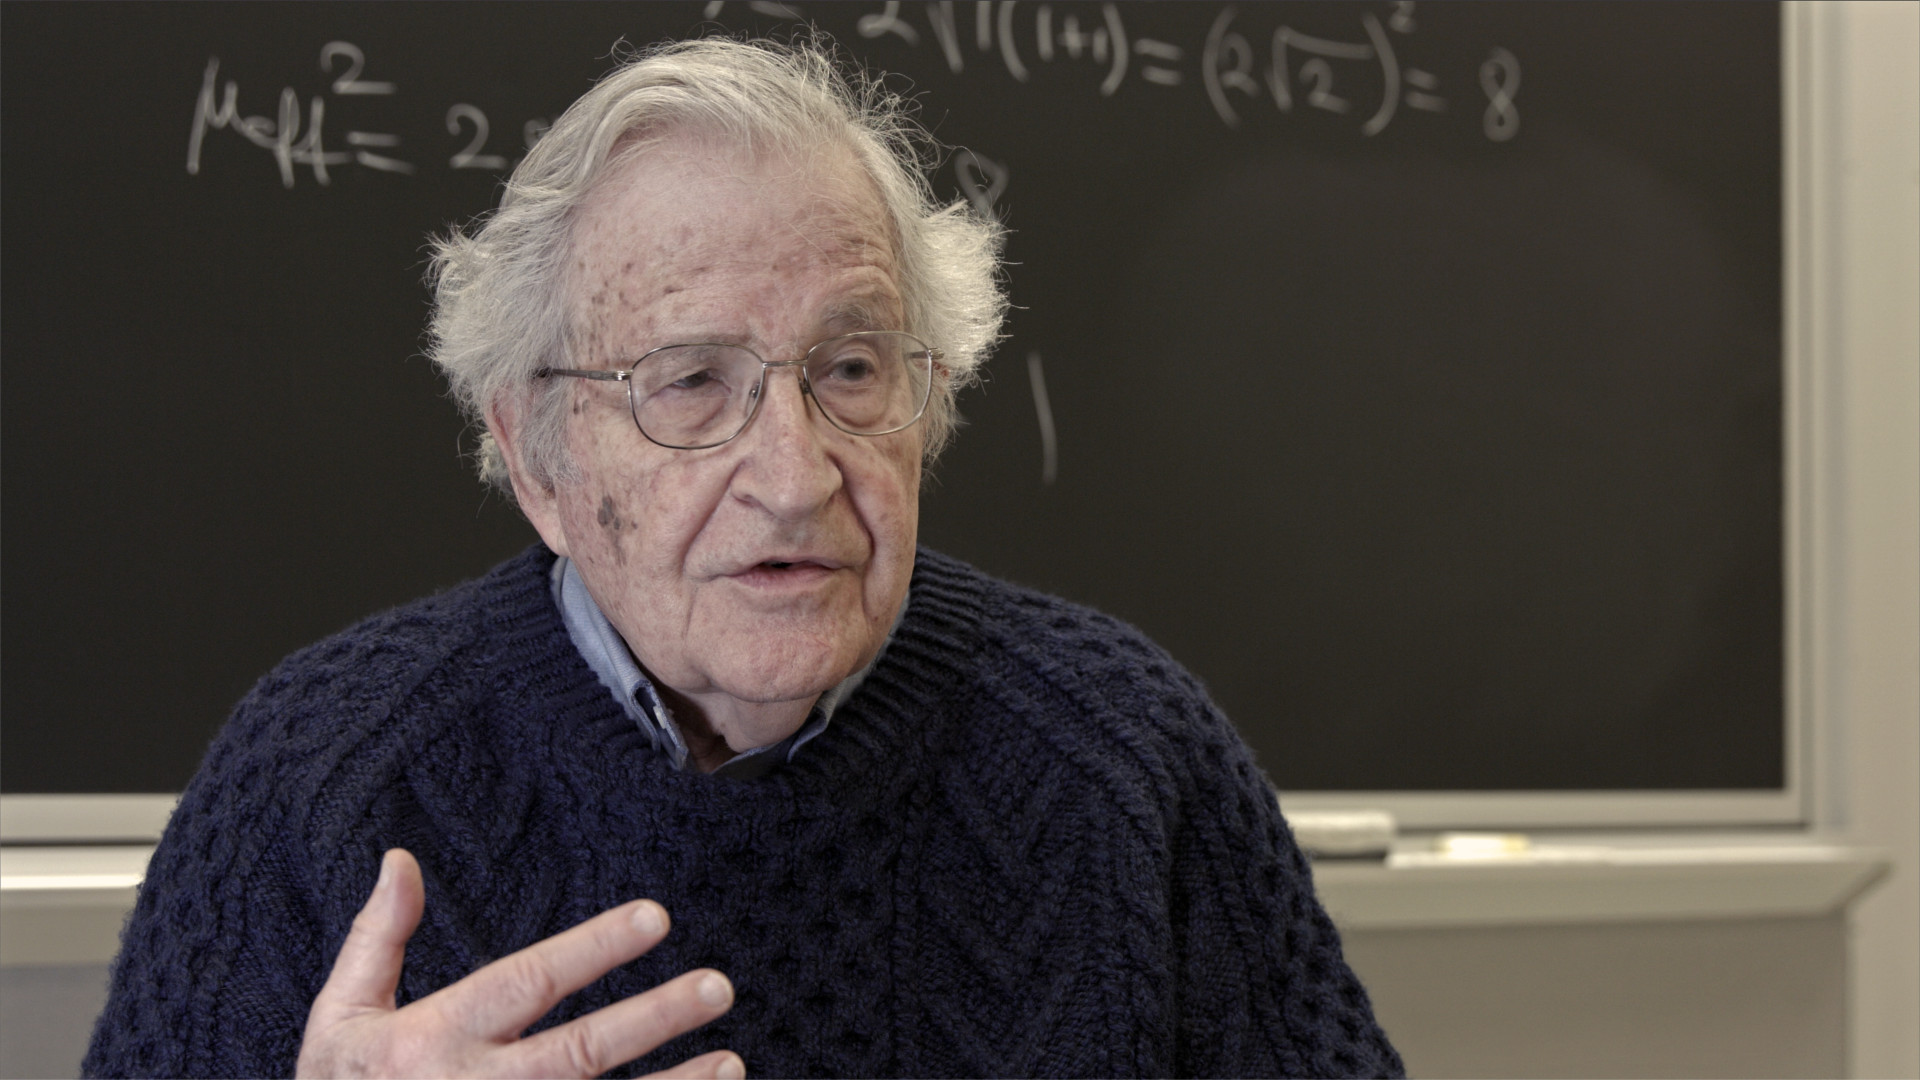 Disparity Film Still, Noam Chomsky in front of blackboard